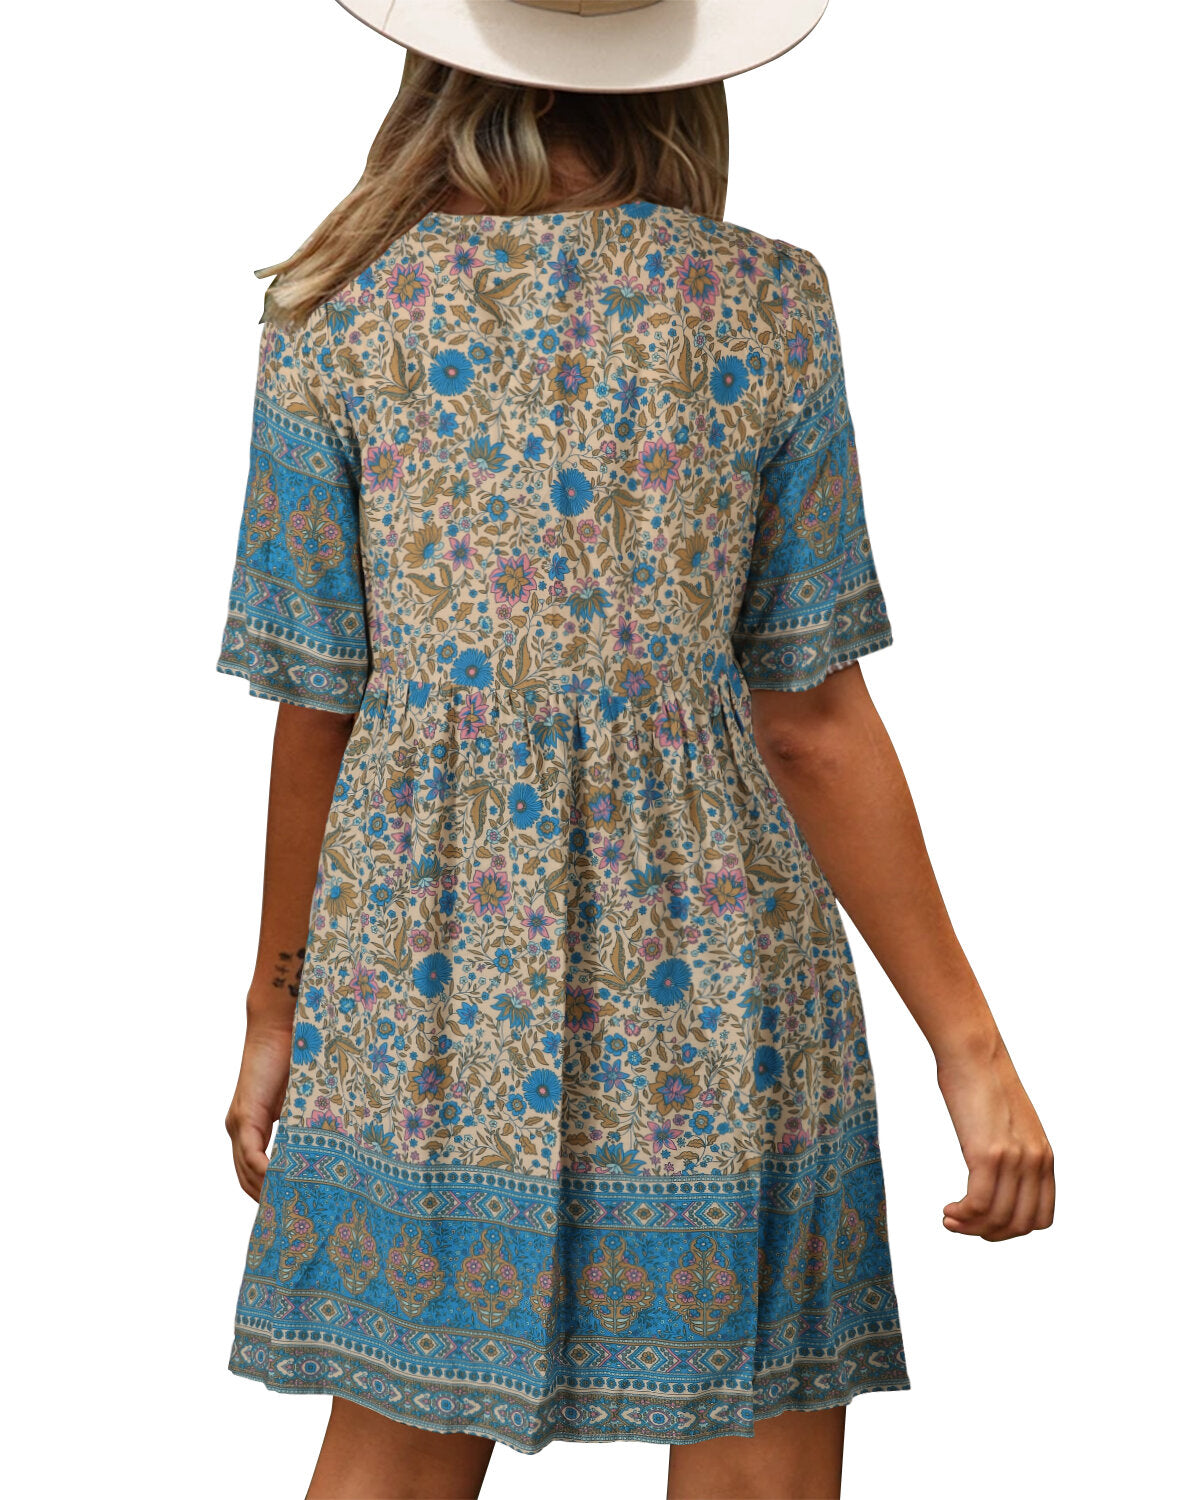 Bohemian Floral Print V-neck Short Sleeve Mini Dress